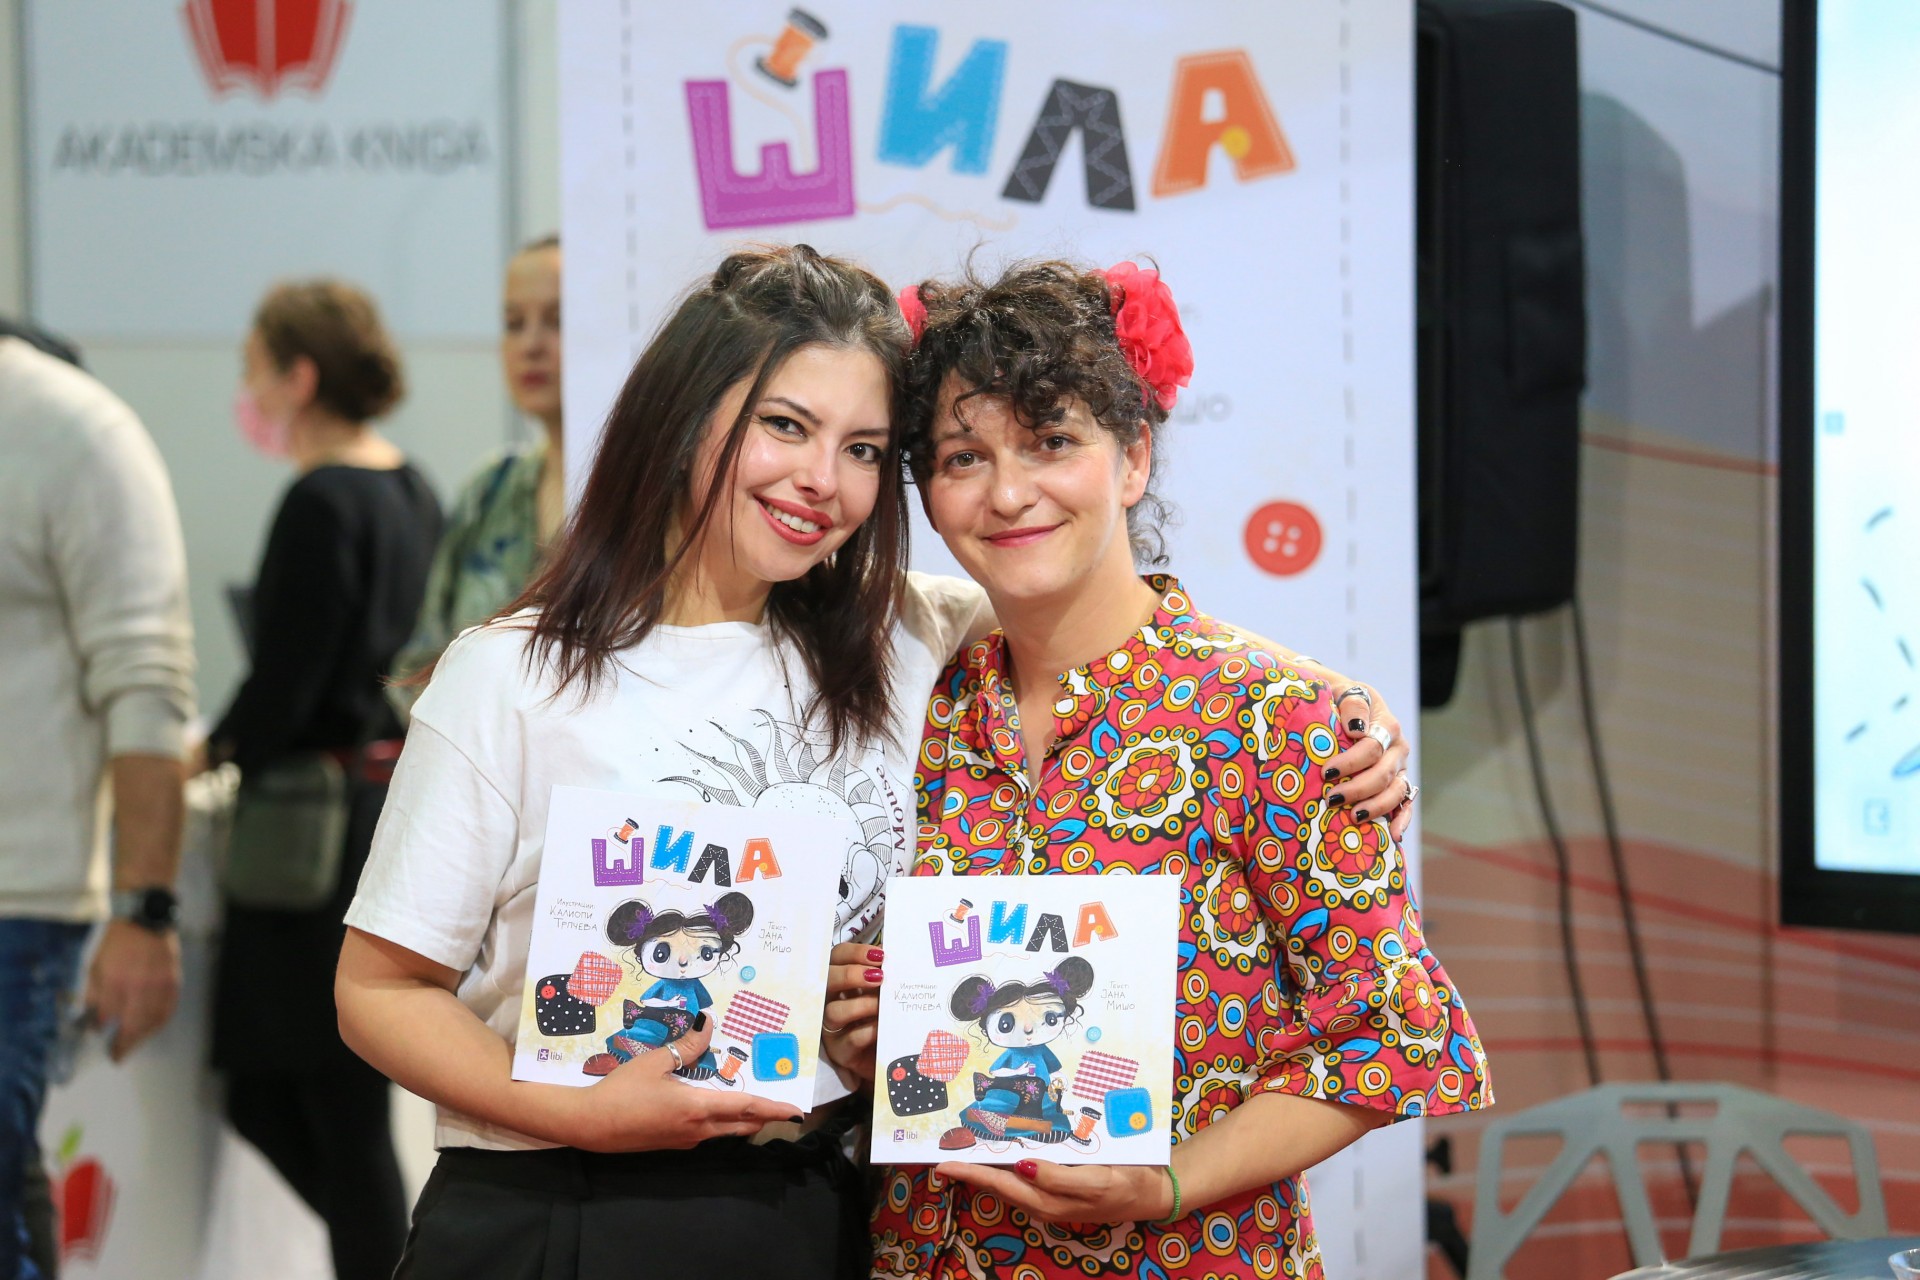 Сликовницата „Шила“ од Калиопи Трпчева и Јана Мишо „шие“ волшебен свет што им помага на децата кои се поразлични од другите